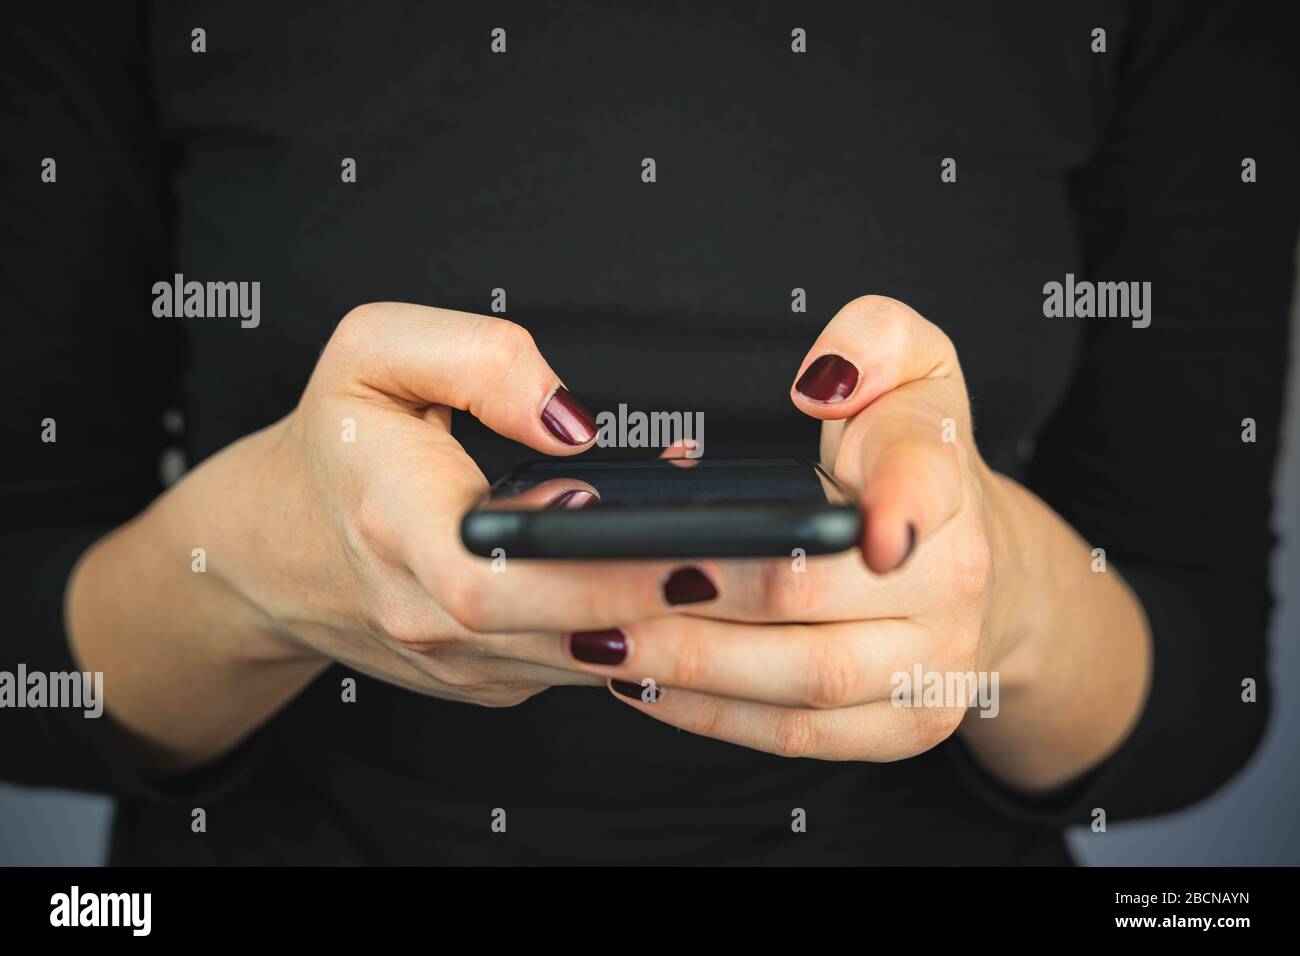 SMS über Smartphone auf dem Telefon. Weibliche Hände mit einem Smartphone, das Text eingibt und scrollt, Nahansicht Stockfoto